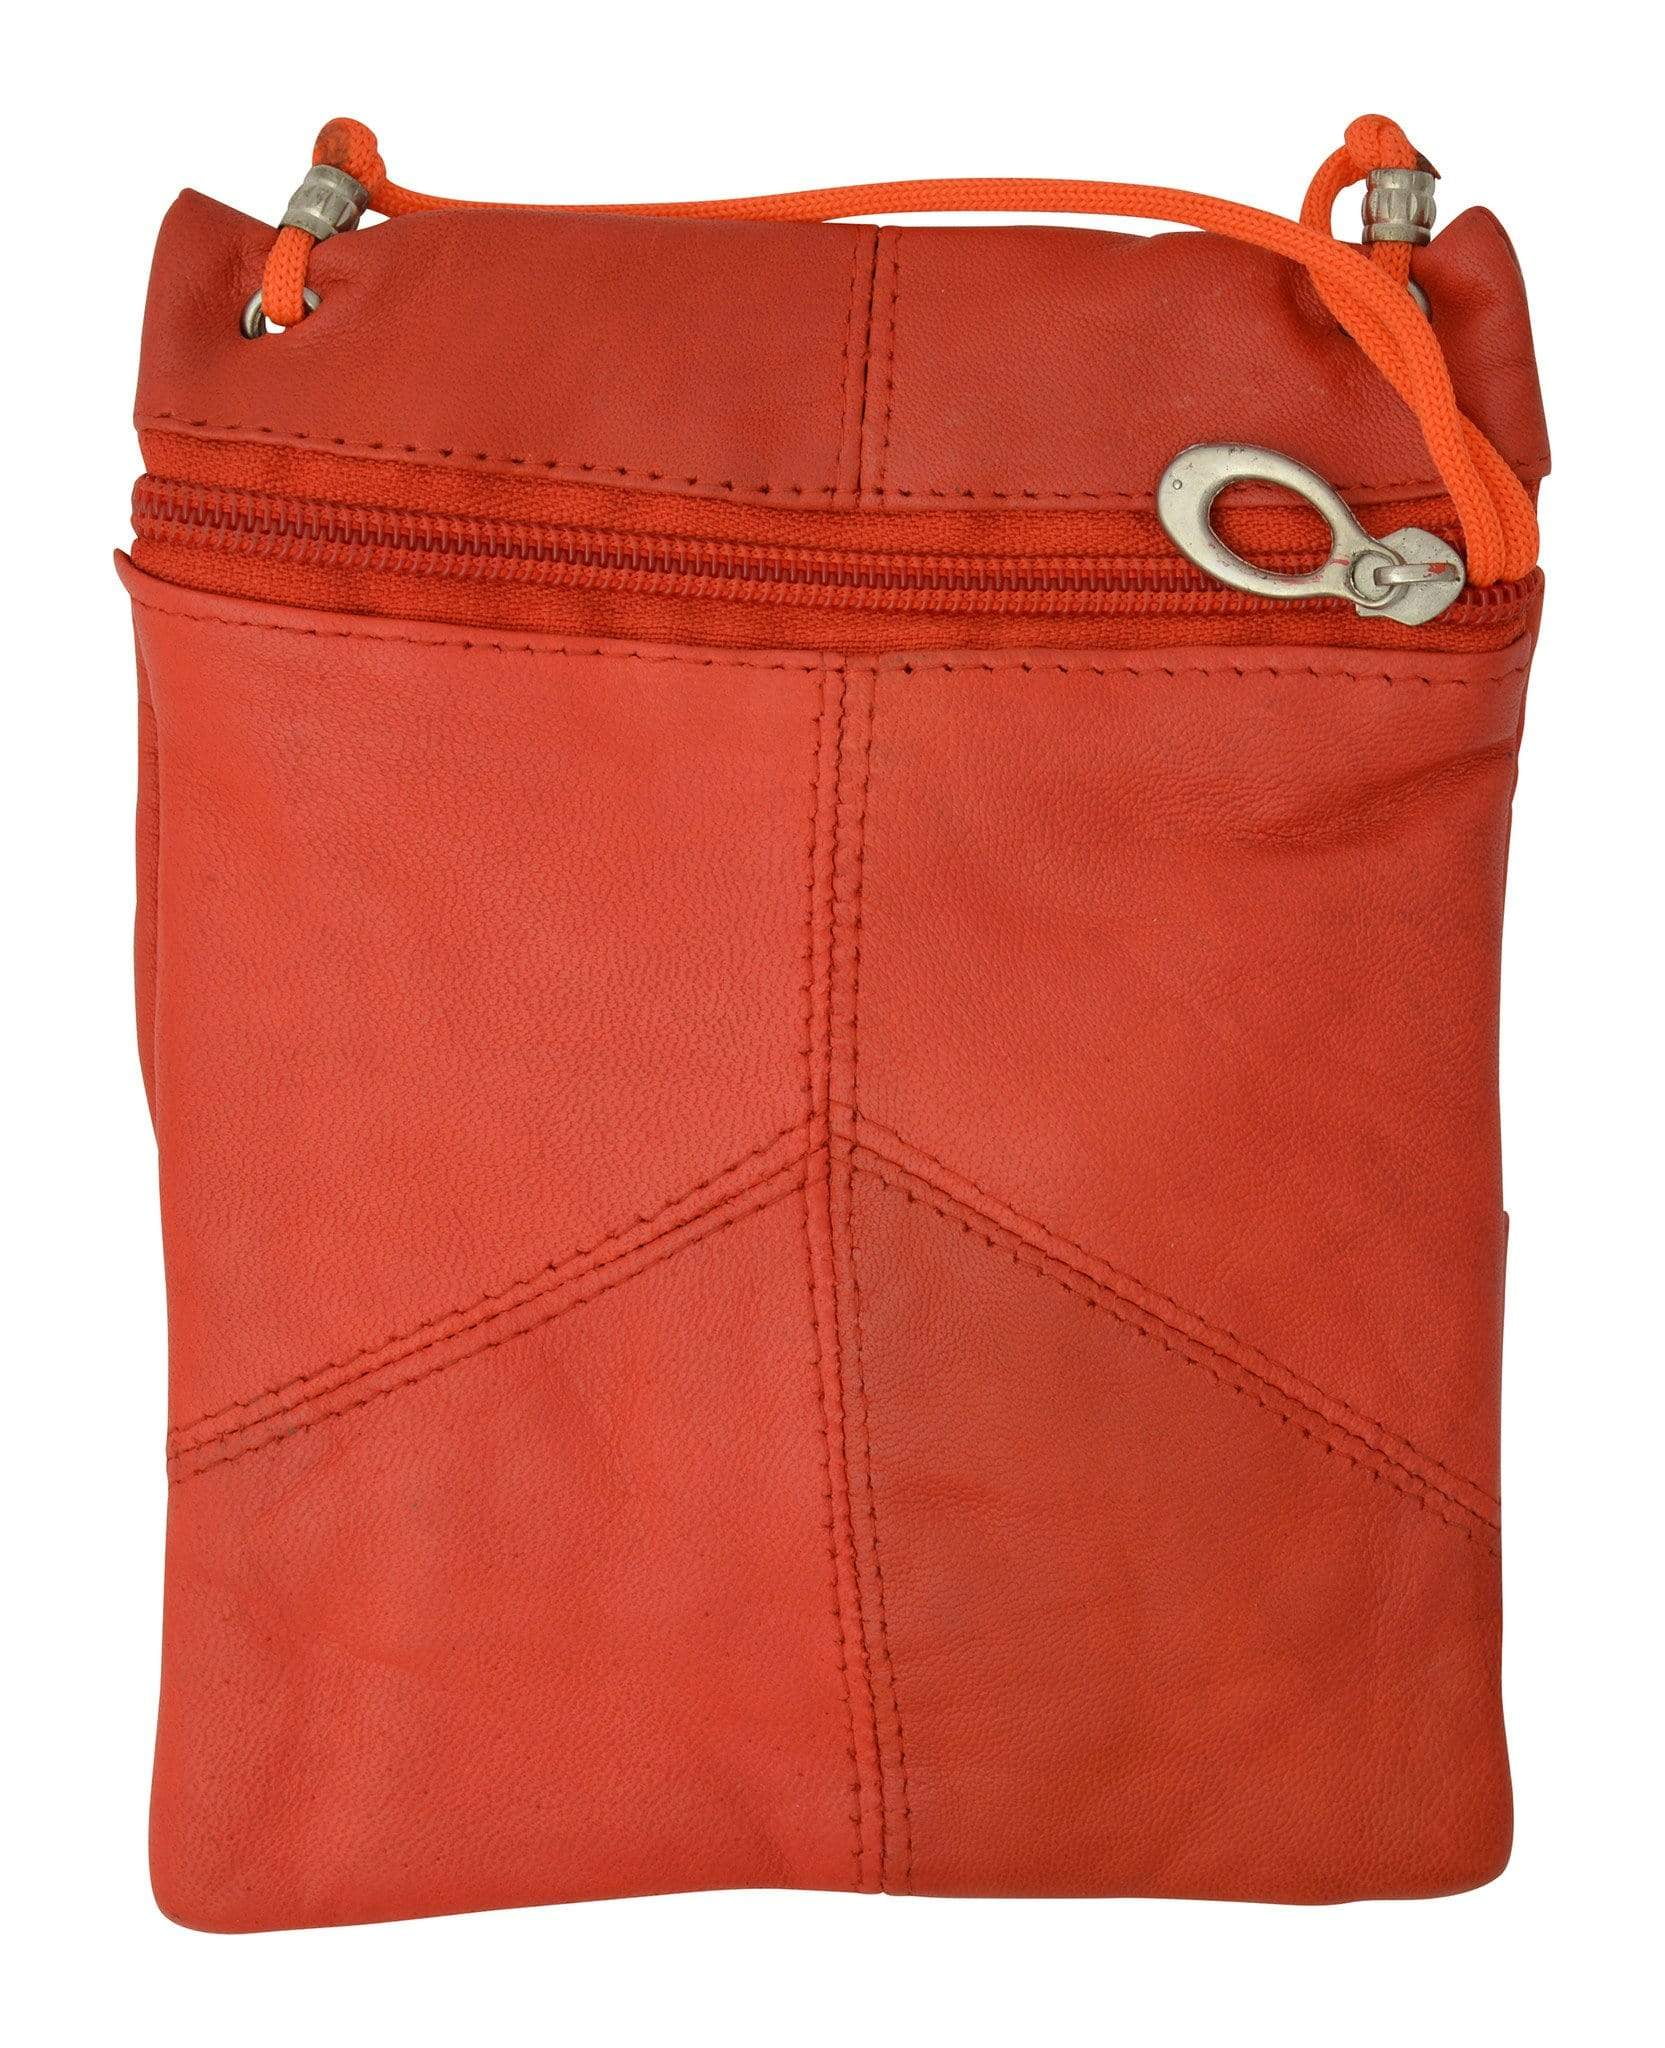 Red Leather Handbag, Leather Messenger Bag, Leather Shoulder Bag, Long  Strap Bag,medium Size Leather Bag, Pebbled Leather Bag, Red Purse - Etsy UK  | Everyday leather bag, Red leather handbags, Leather bag